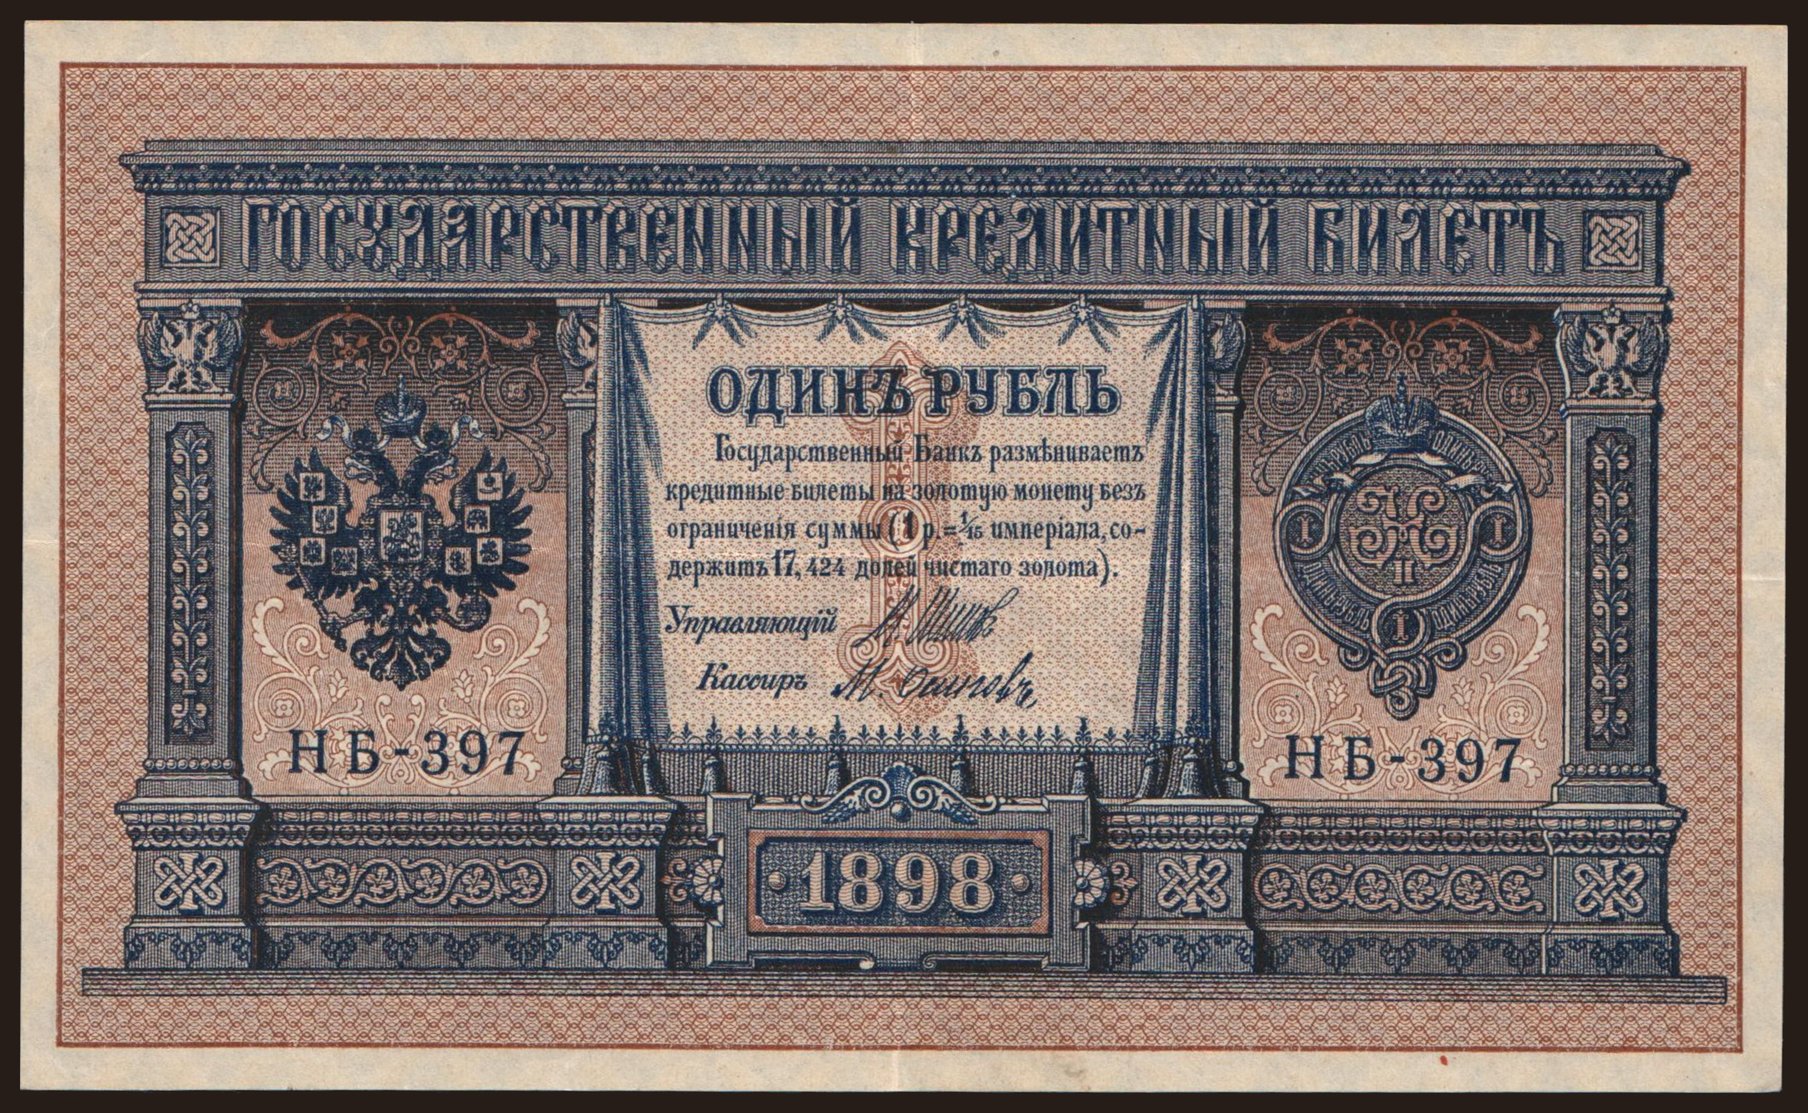 1 rubel, 1898, Shipov/ M.Osipow